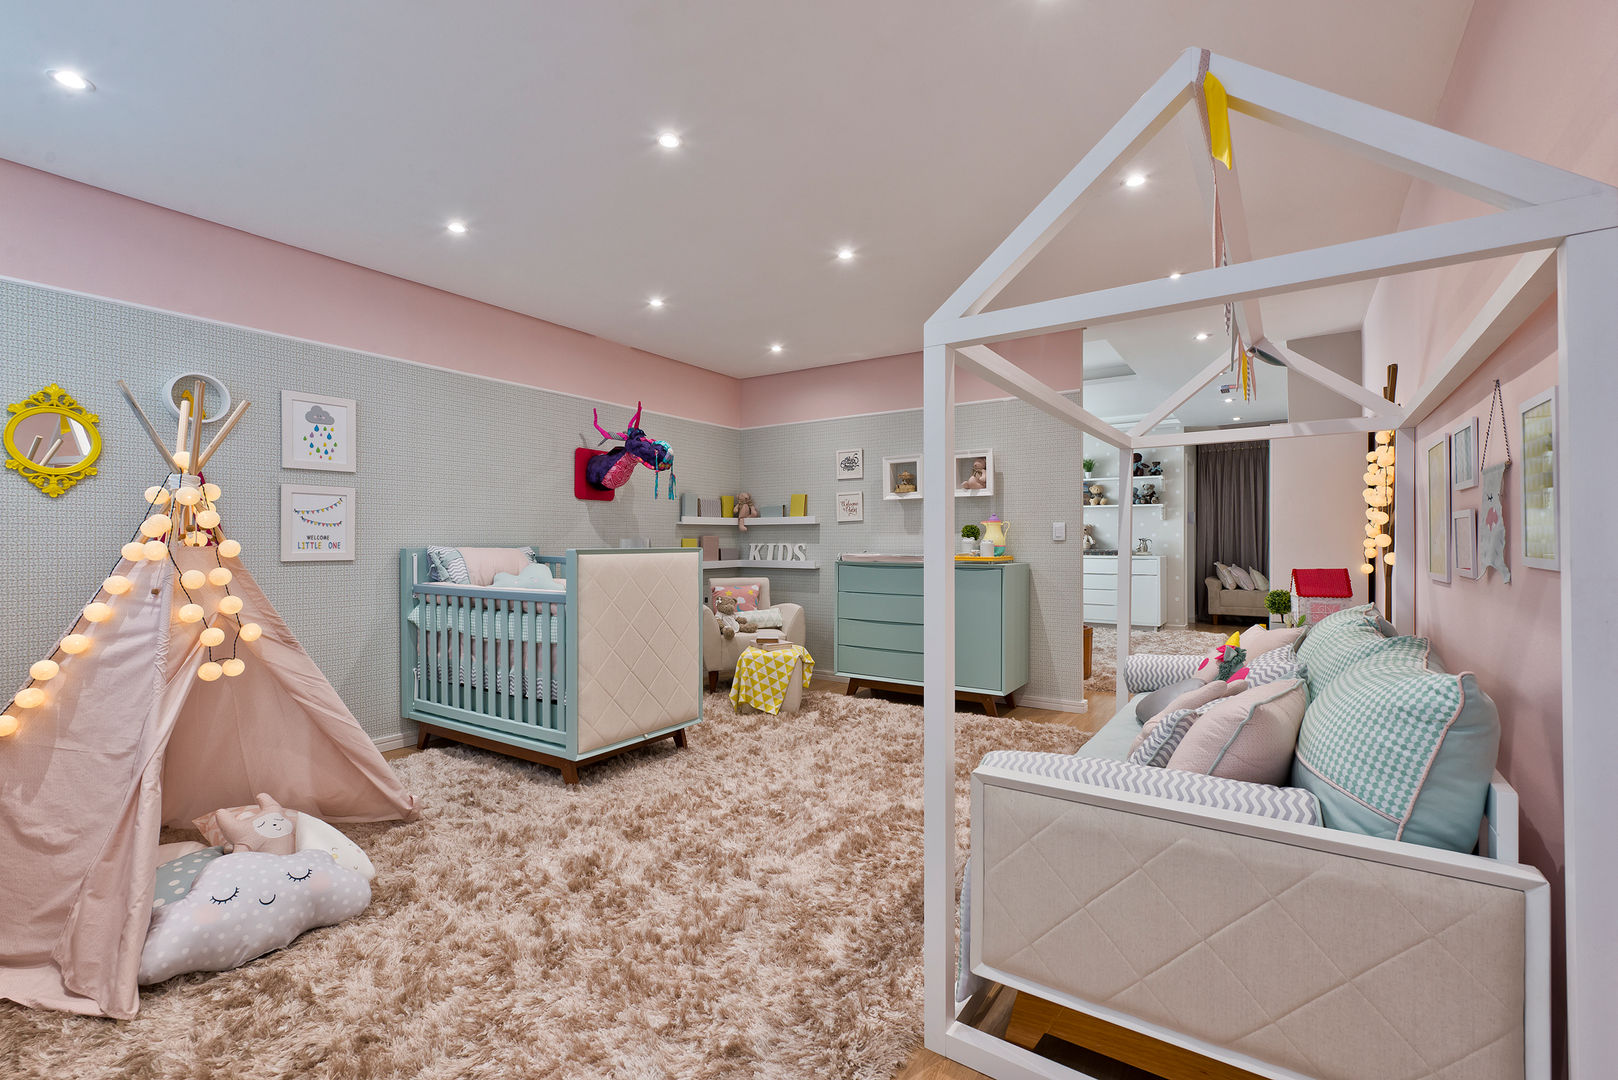 Quarto de menina moderninho, KIDS Arquitetura para pequenos KIDS Arquitetura para pequenos Dormitorios infantiles modernos: